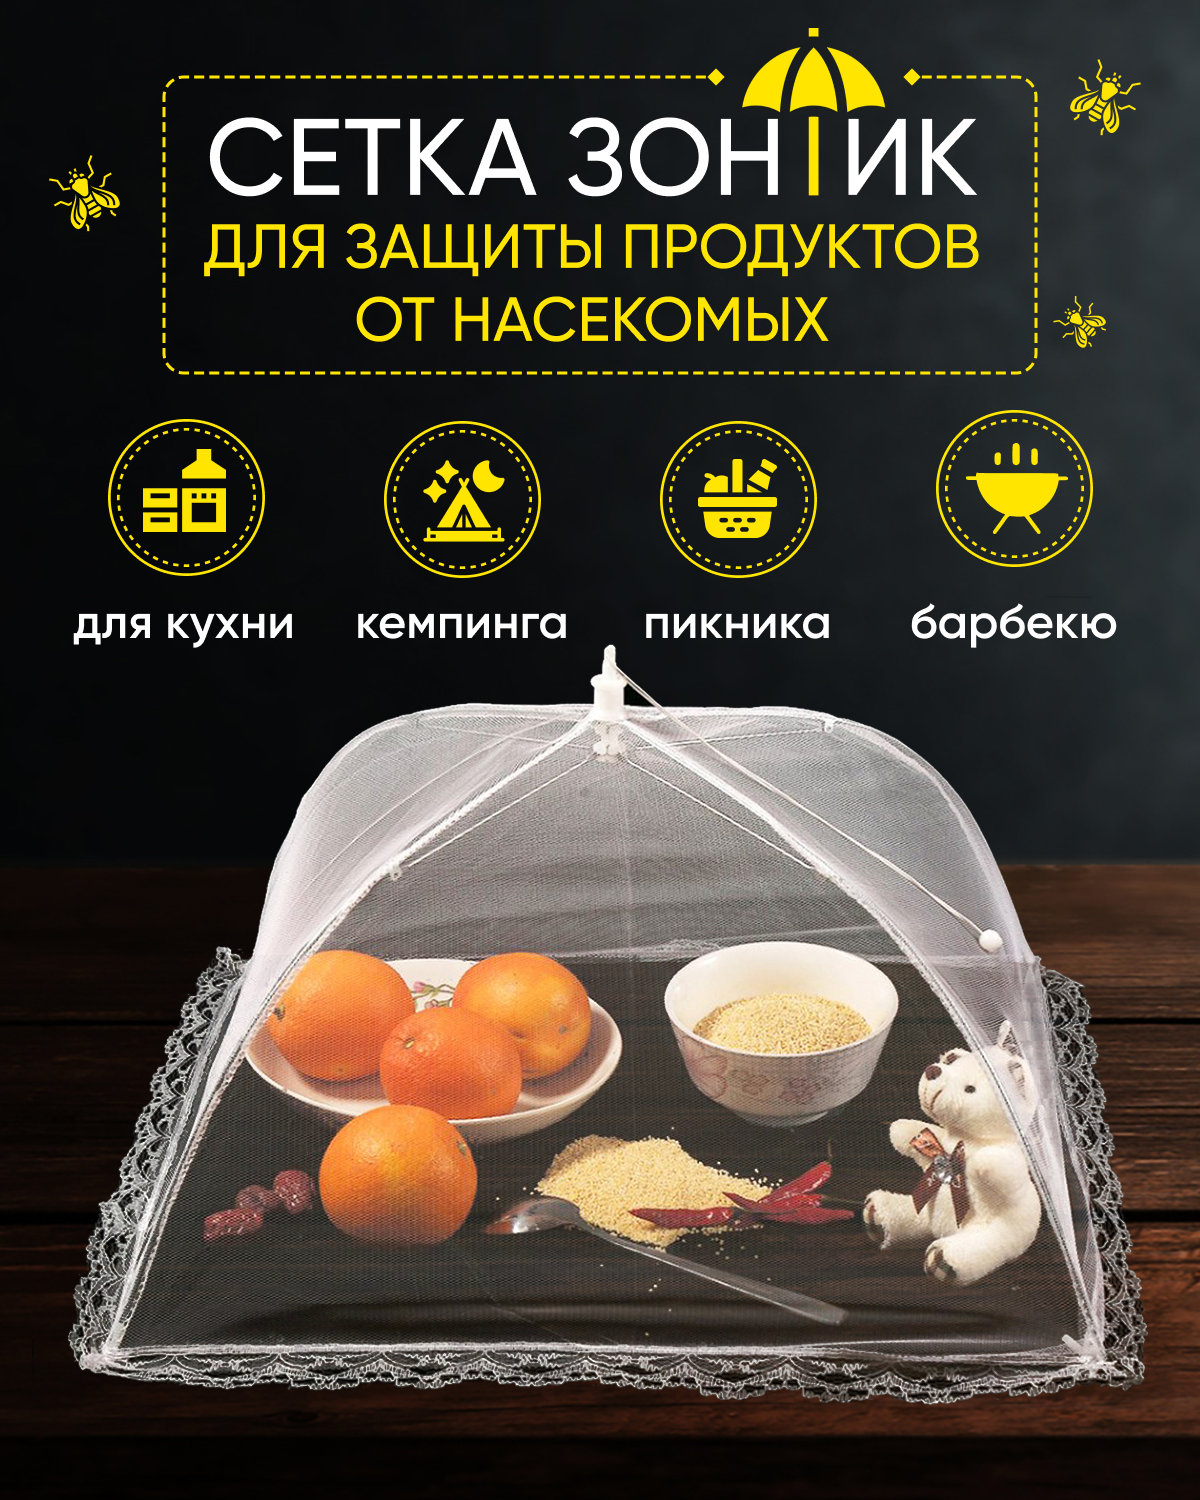 Раскладная сетка зонтик F-MAX для защиты продуктов и еды от насекомых 48 х 48 см, белая